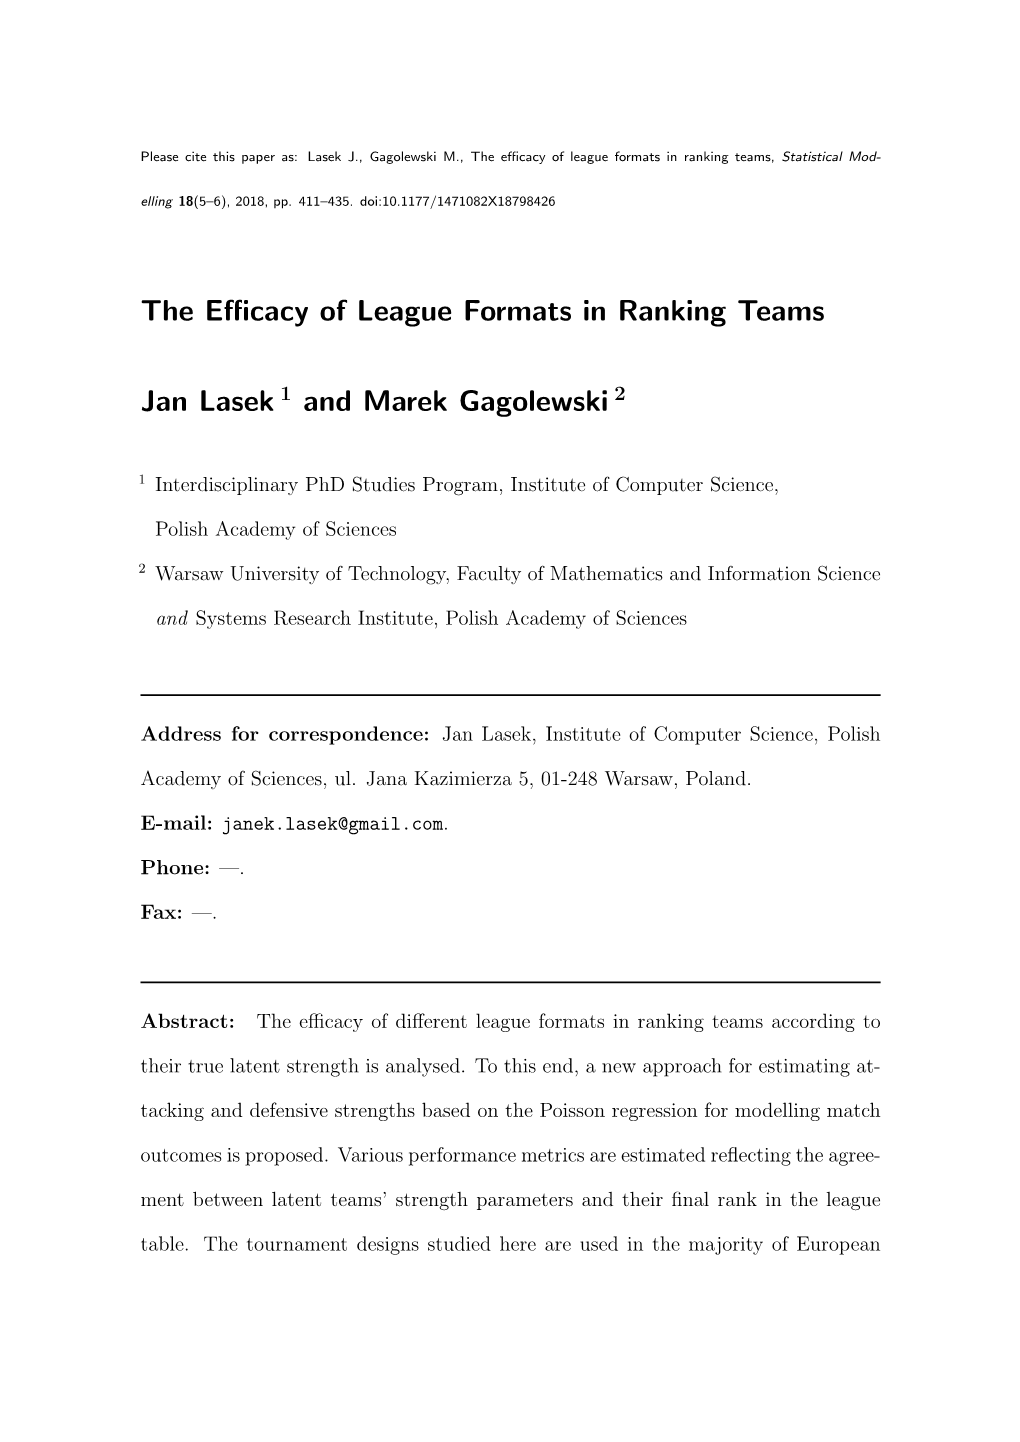 The Efficacy of League Formats in Ranking Teams Jan Lasek 1 and Marek Gagolewski 2